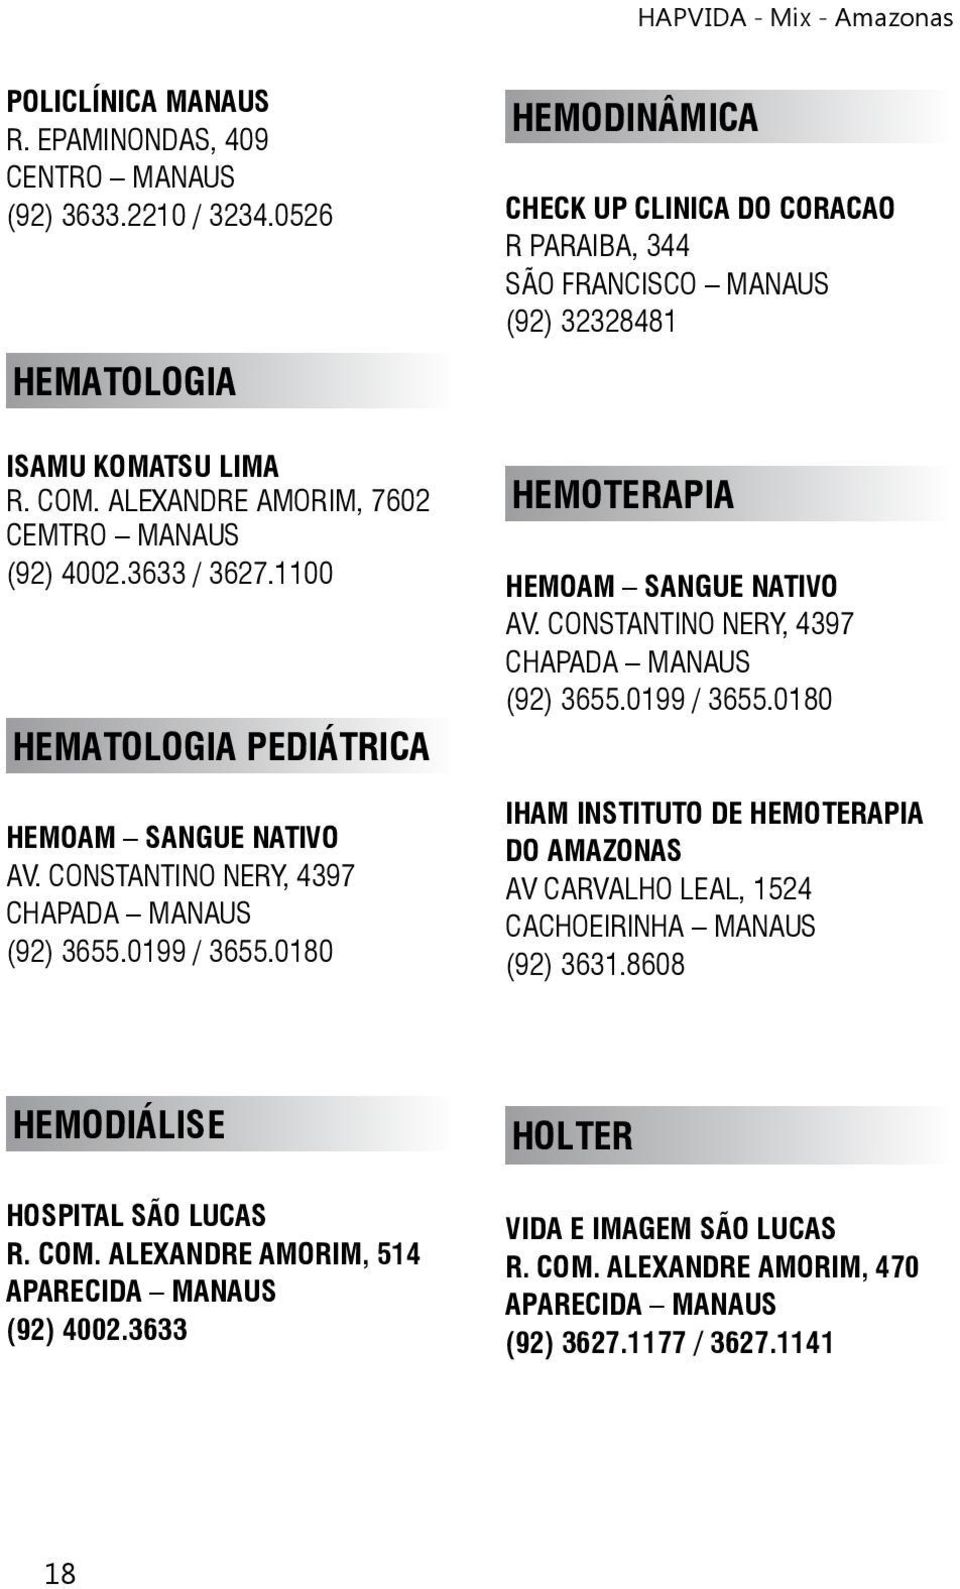 0180 HEMODINÂMICA CHECK UP CLINICA DO CORACAO R PARAIBA, 344 SÃO FRANCISCO MANAUS (92) 32328481 HEMOTERAPIA HEMOAM SANGUE NATIVO AV. CONSTANTINO NERY, 4397 CHAPADA MANAUS (92) 3655.